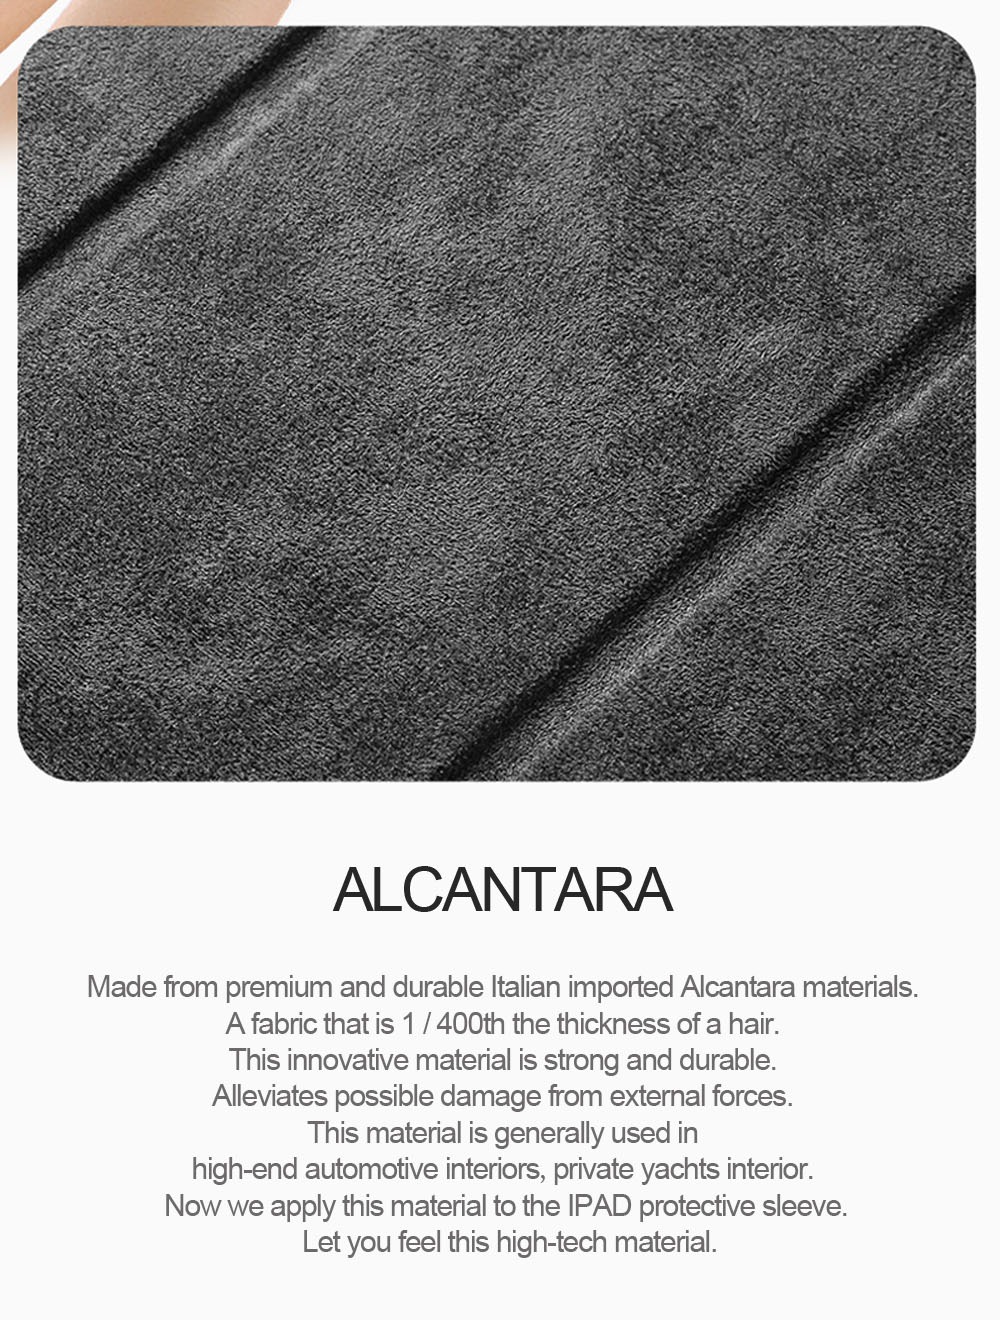 アルカンターラ ラグジュアリー iPad スマートフォリオケース